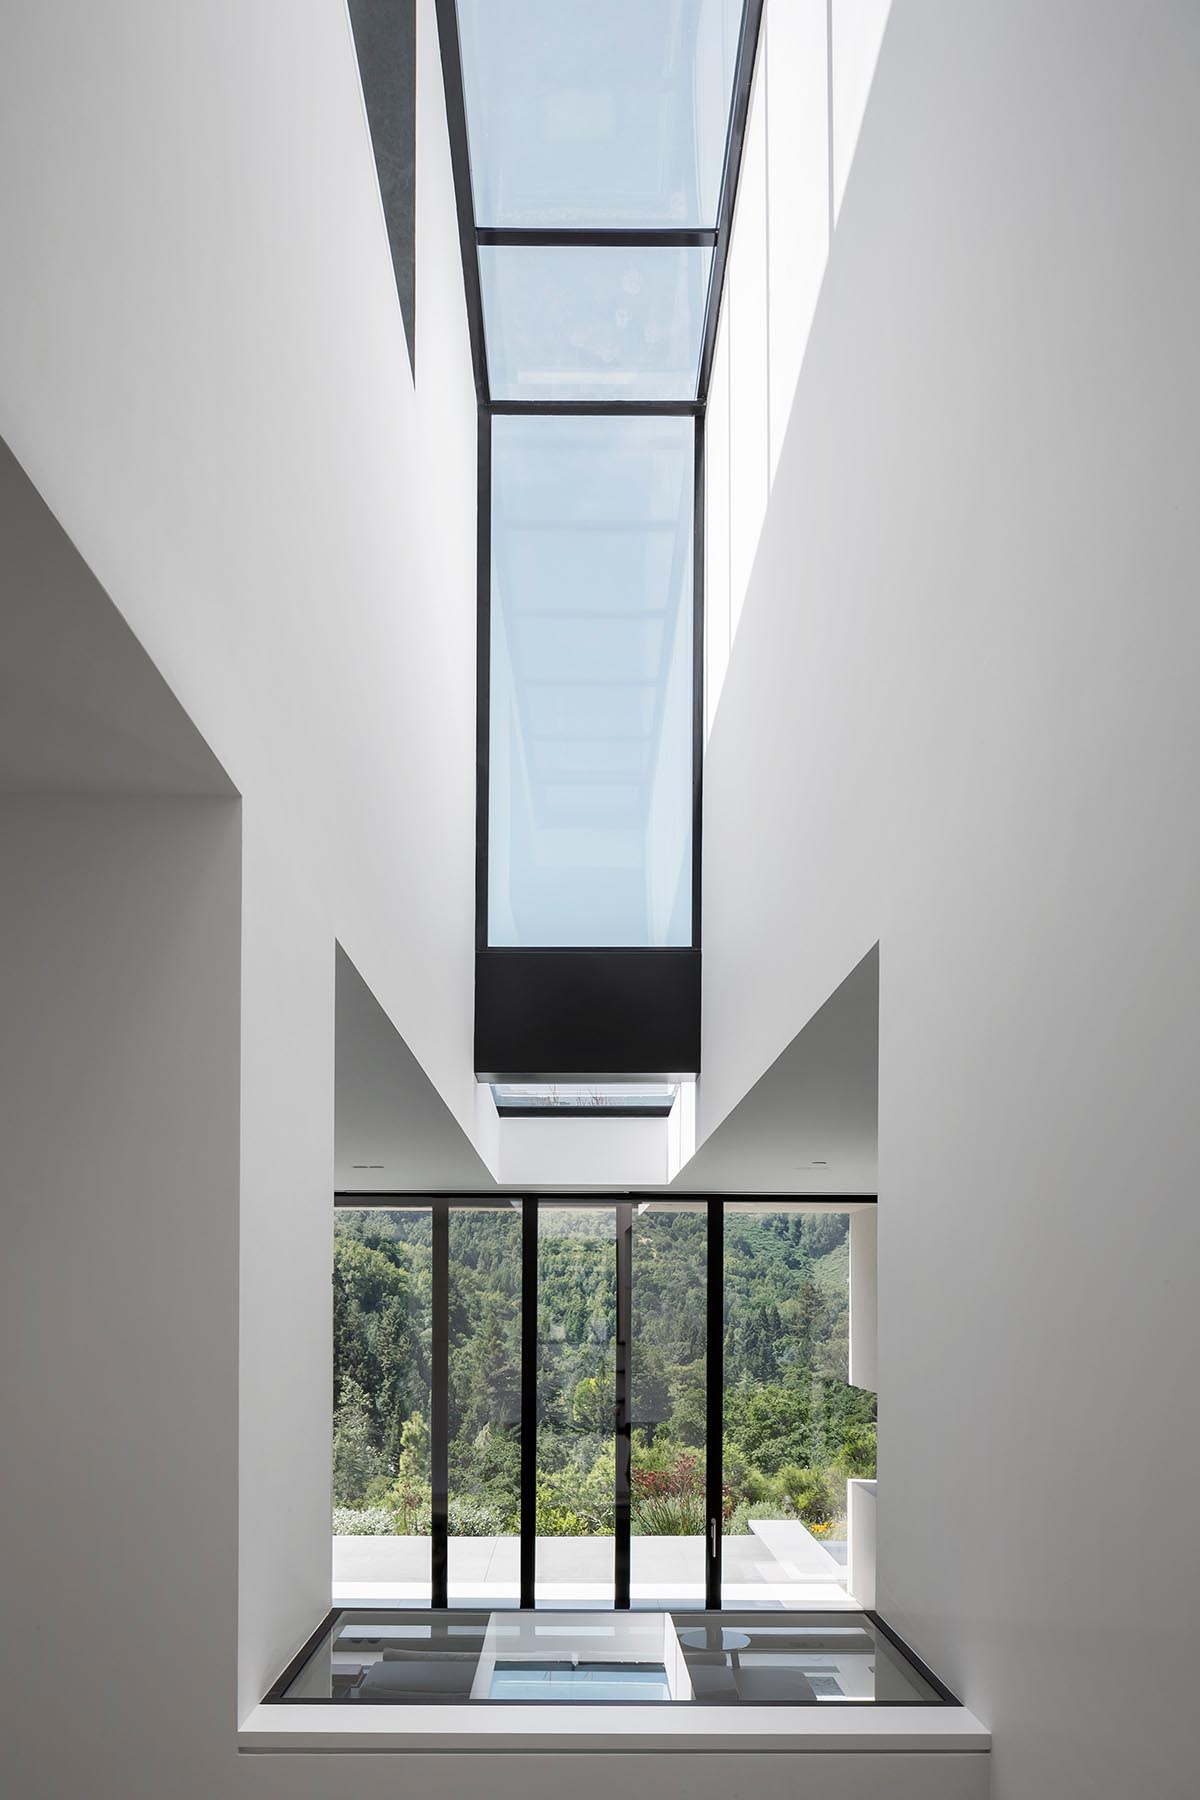 В этом современном доме есть окно, которое пересекает внутреннее пространство двойной высоты.